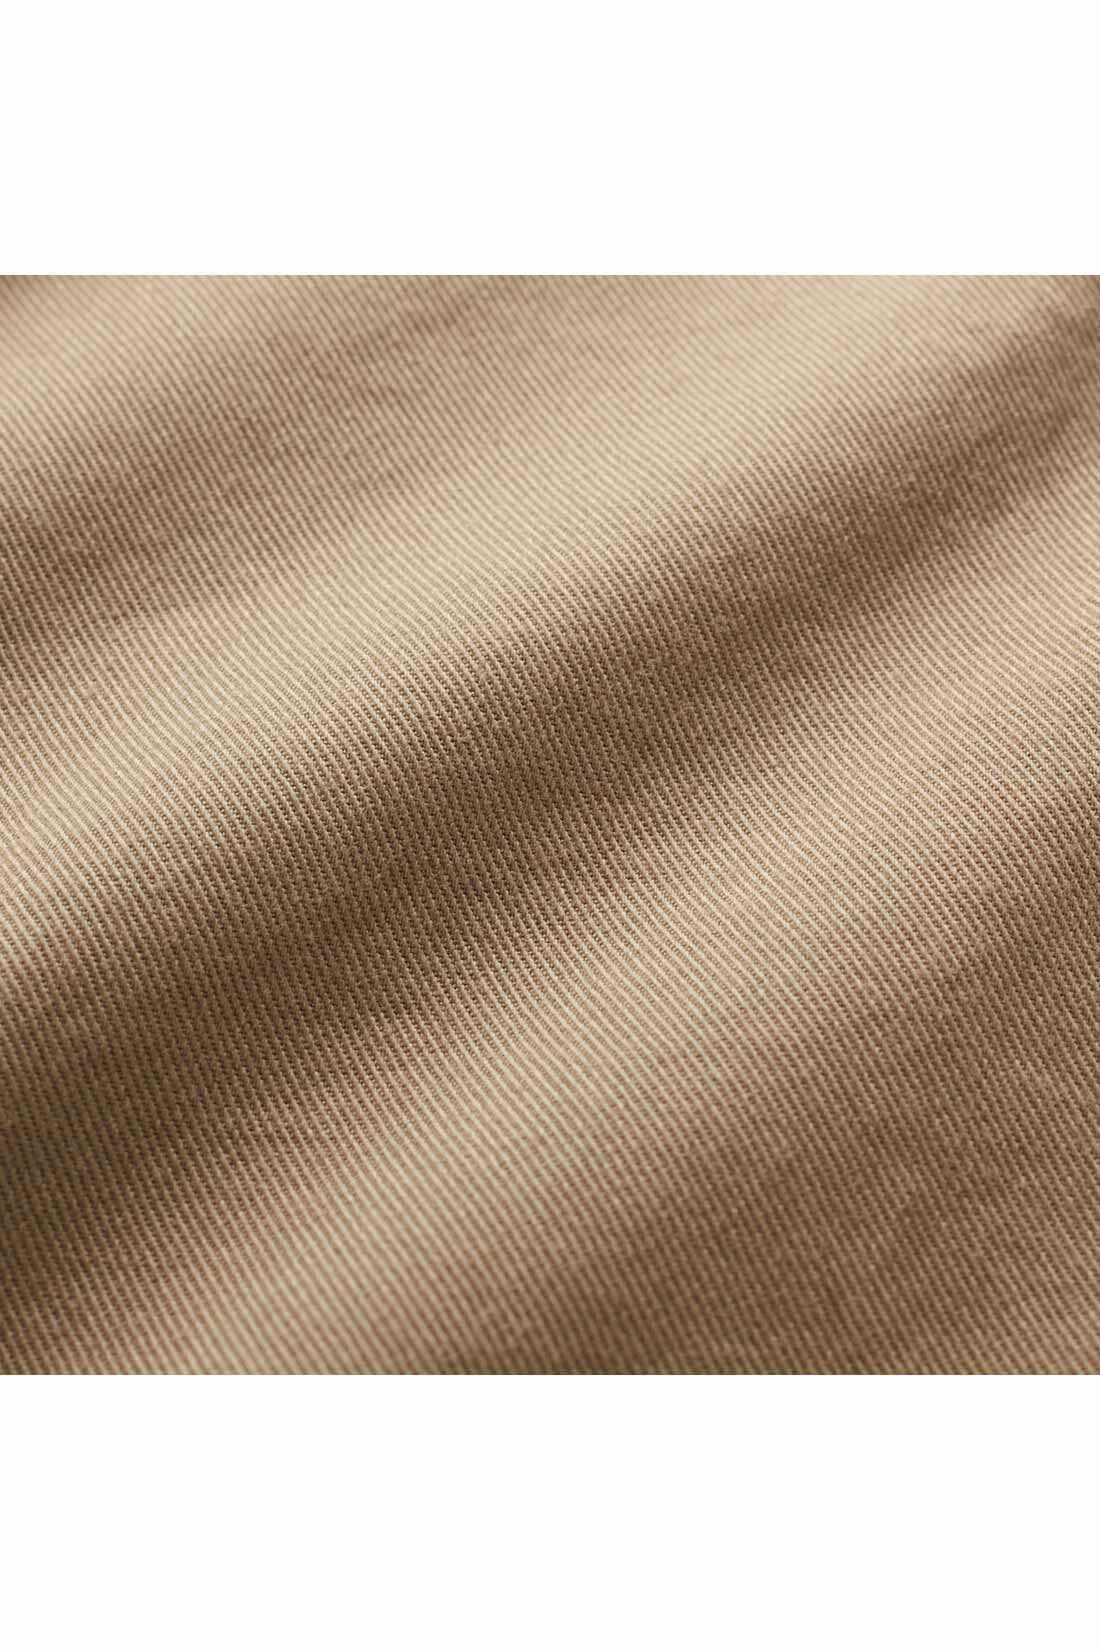 THREE FIFTY STANDARD|THREE FIFTY STANDARD　すっきりペグパンツ〈ブラック〉|太番手の綾織りでふくらみのある素材は、年中使える質感。　※お届けするカラーとは異なります。